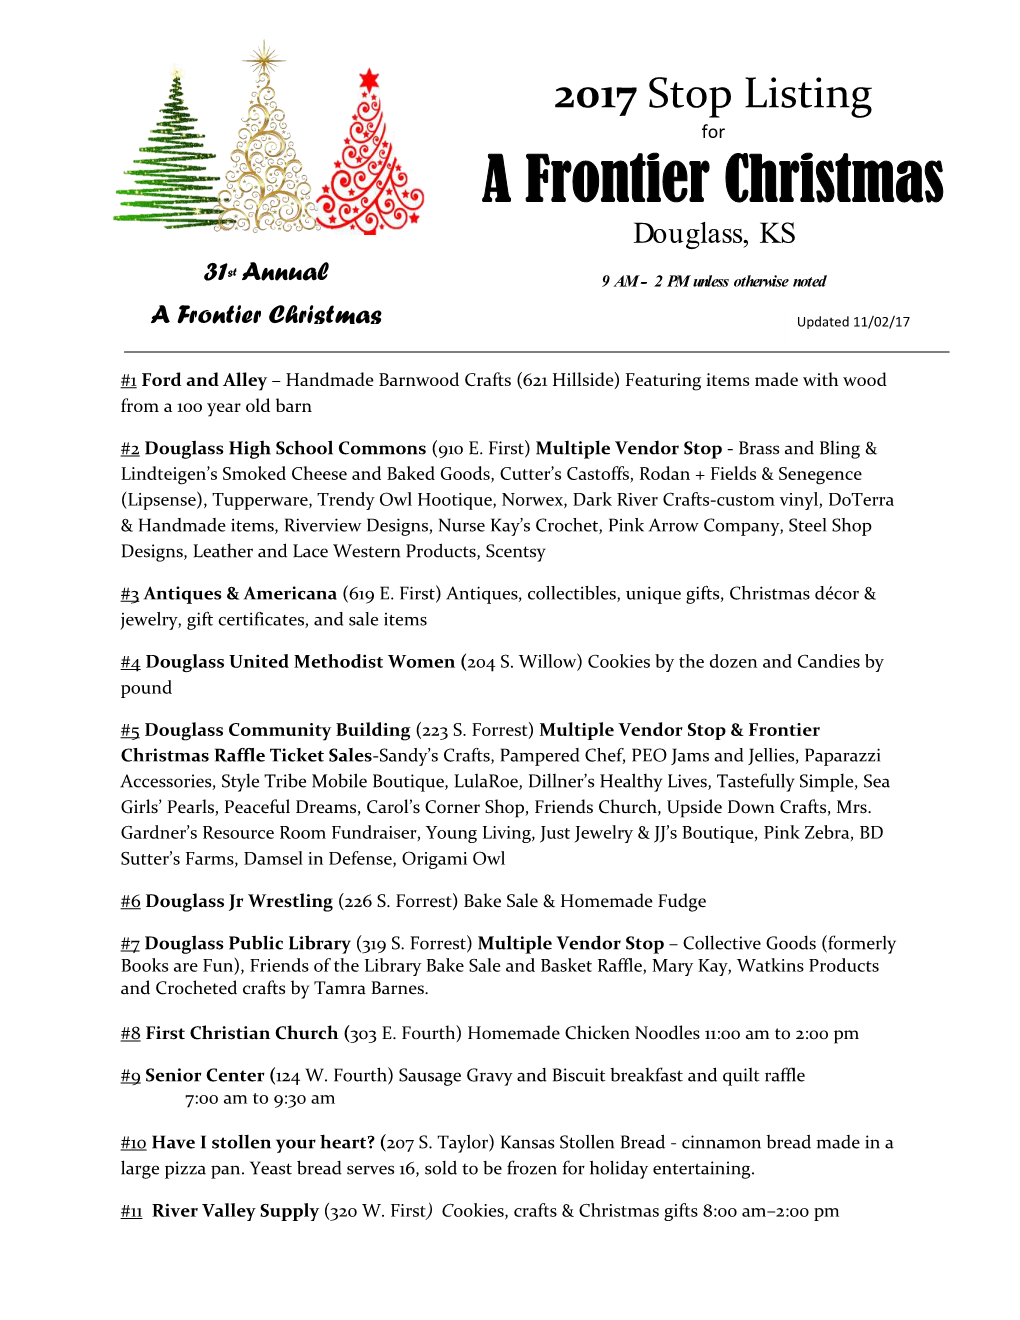 A Frontier Christmas Douglass, Kansas